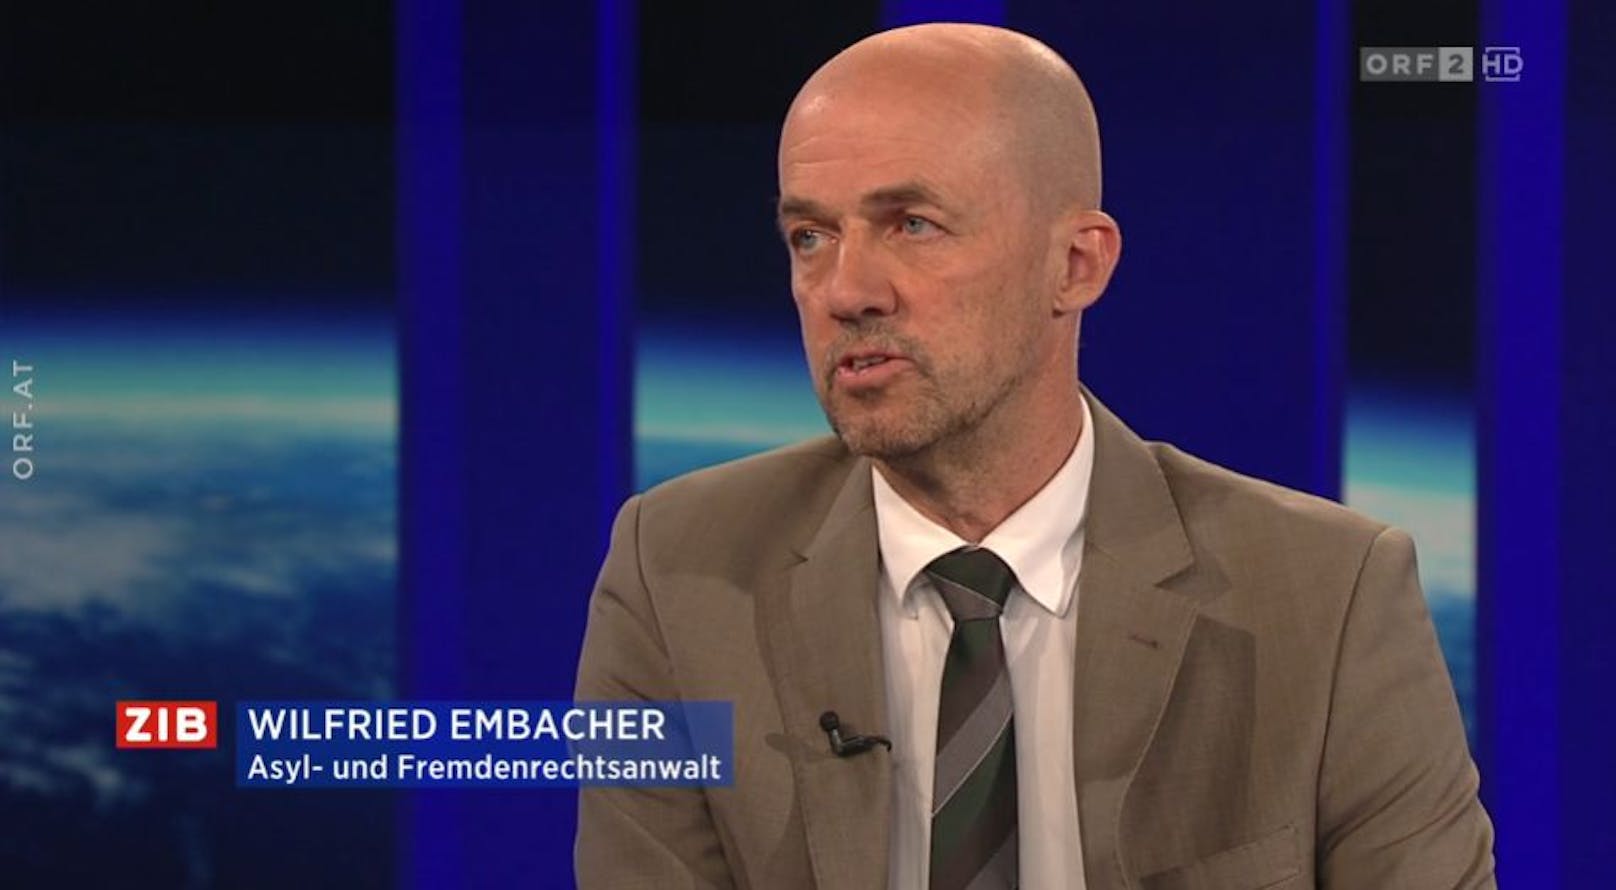 Tina-Anwalt Wilfried Embacher zu Gast im ZIB2-Studio bei Armin Wolf am 16. August 2022.